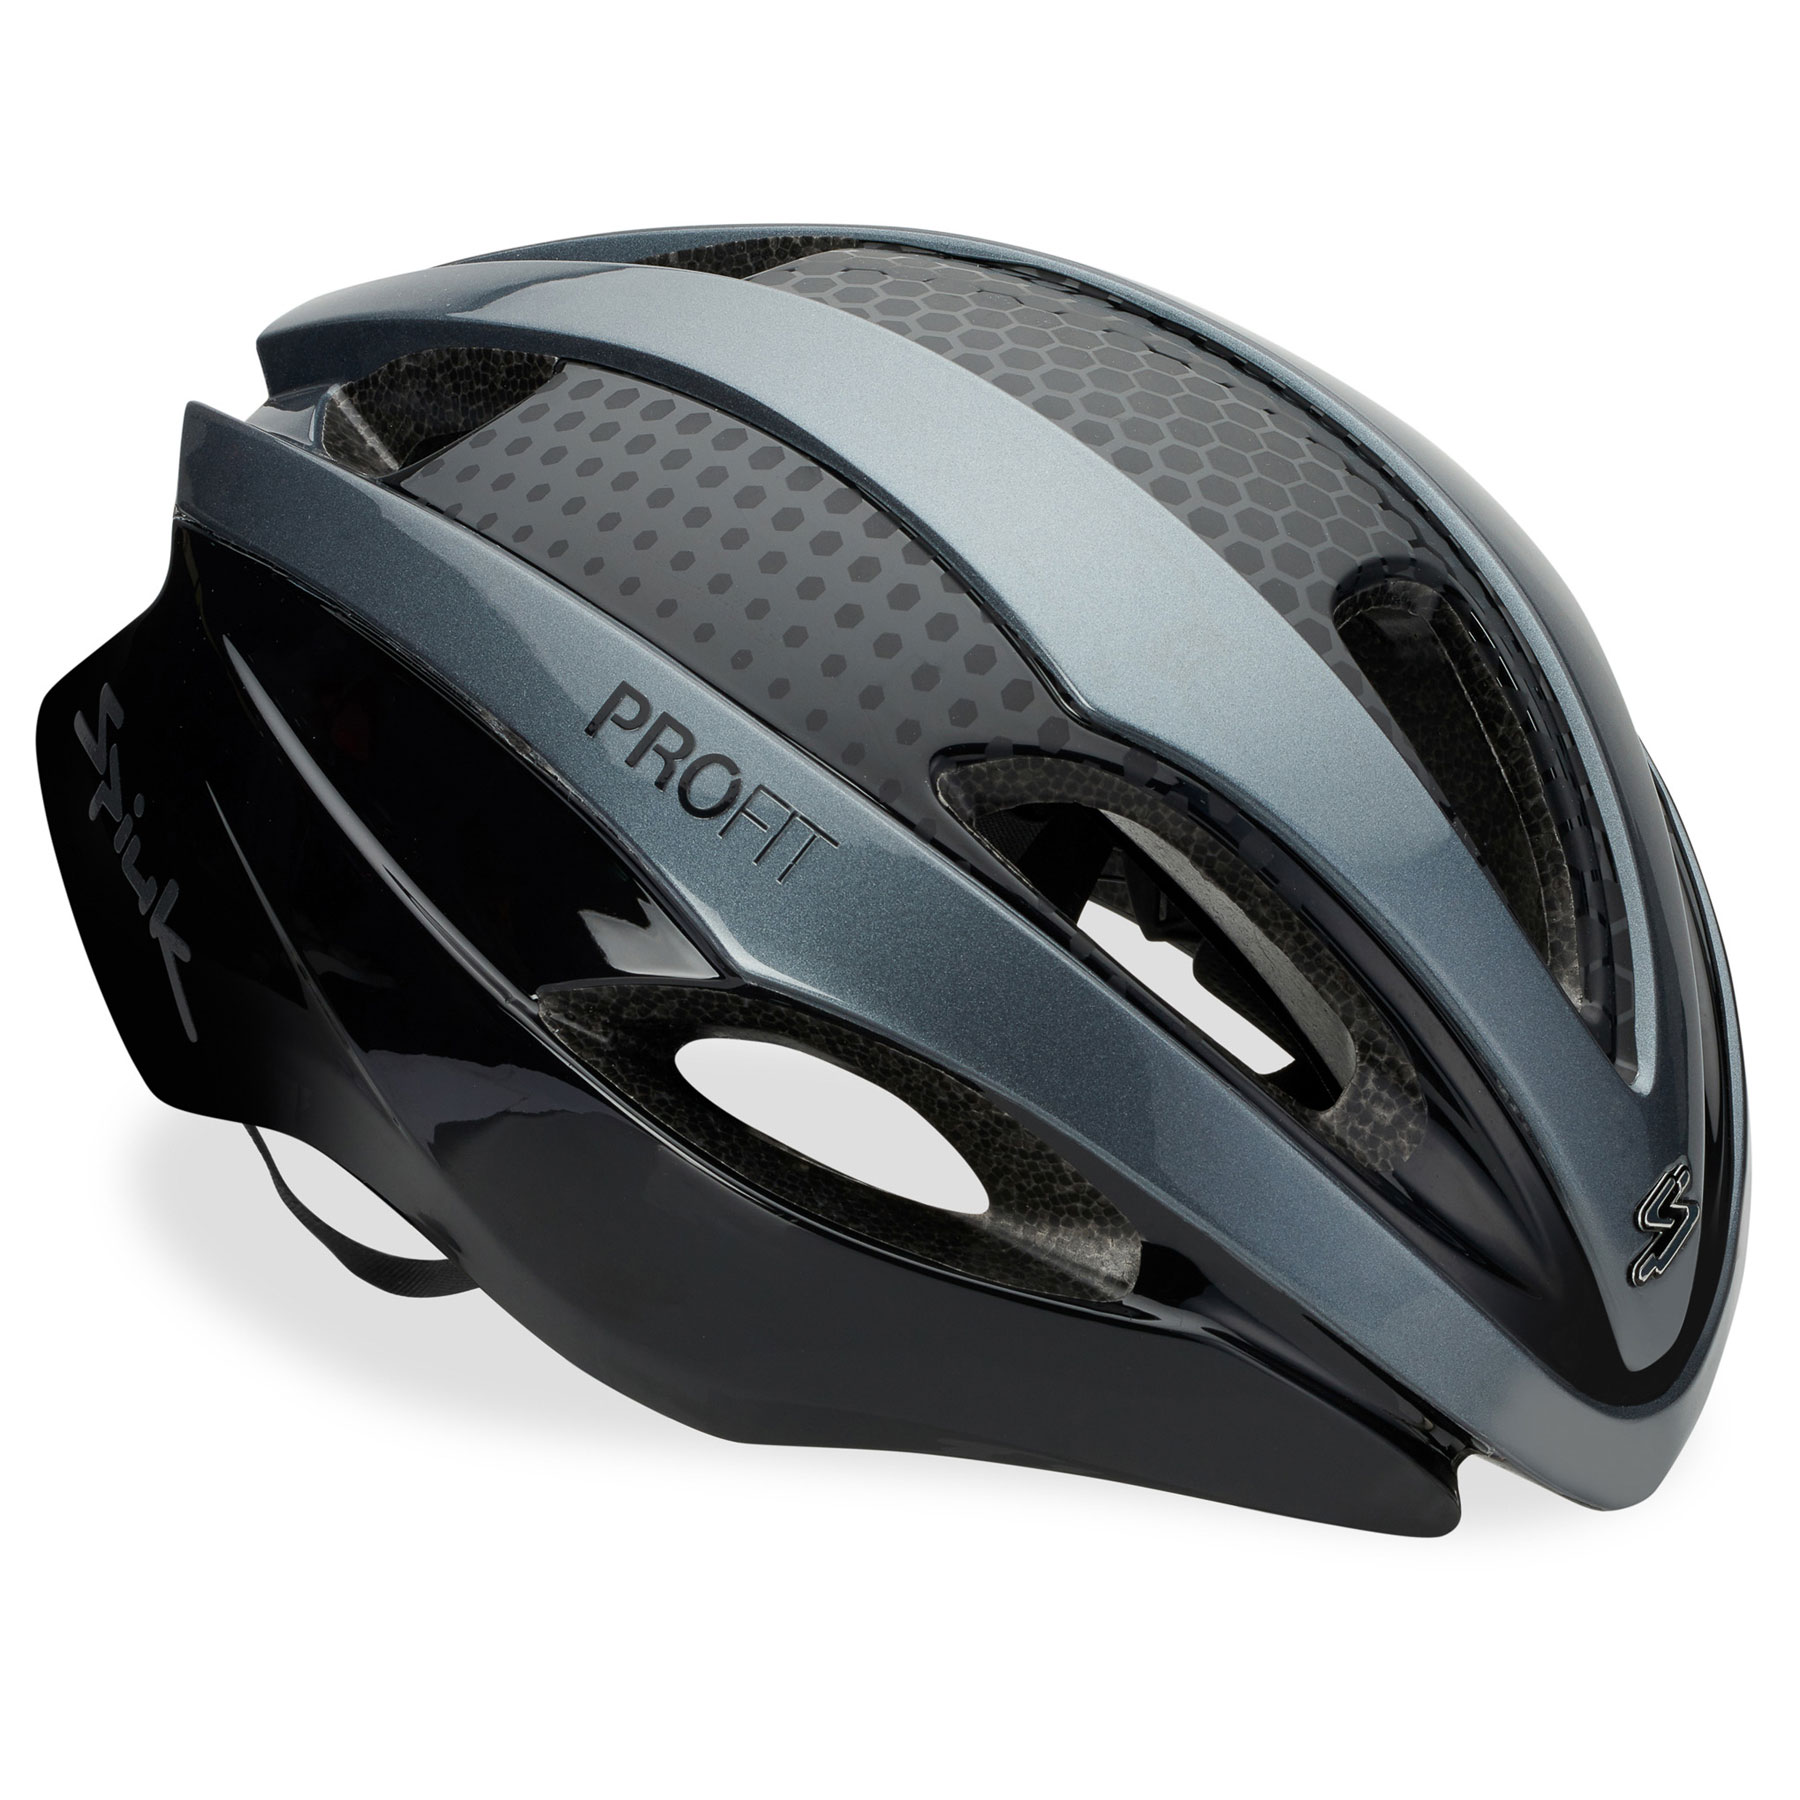 Produktbild von Spiuk PROFIT Aero Helmet - black/anthracite